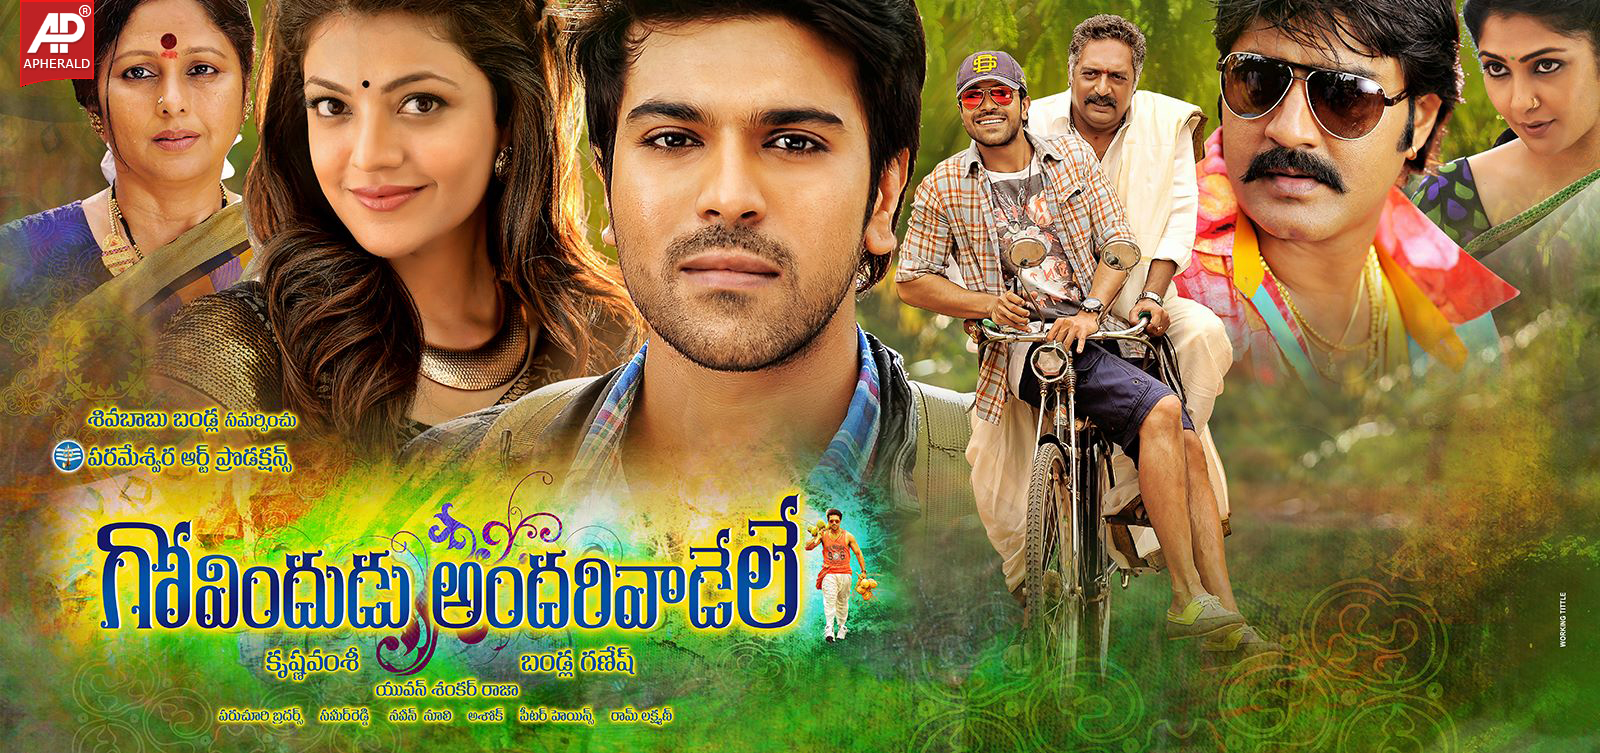 Govindudu Andarivadele Movie 5 New Posters